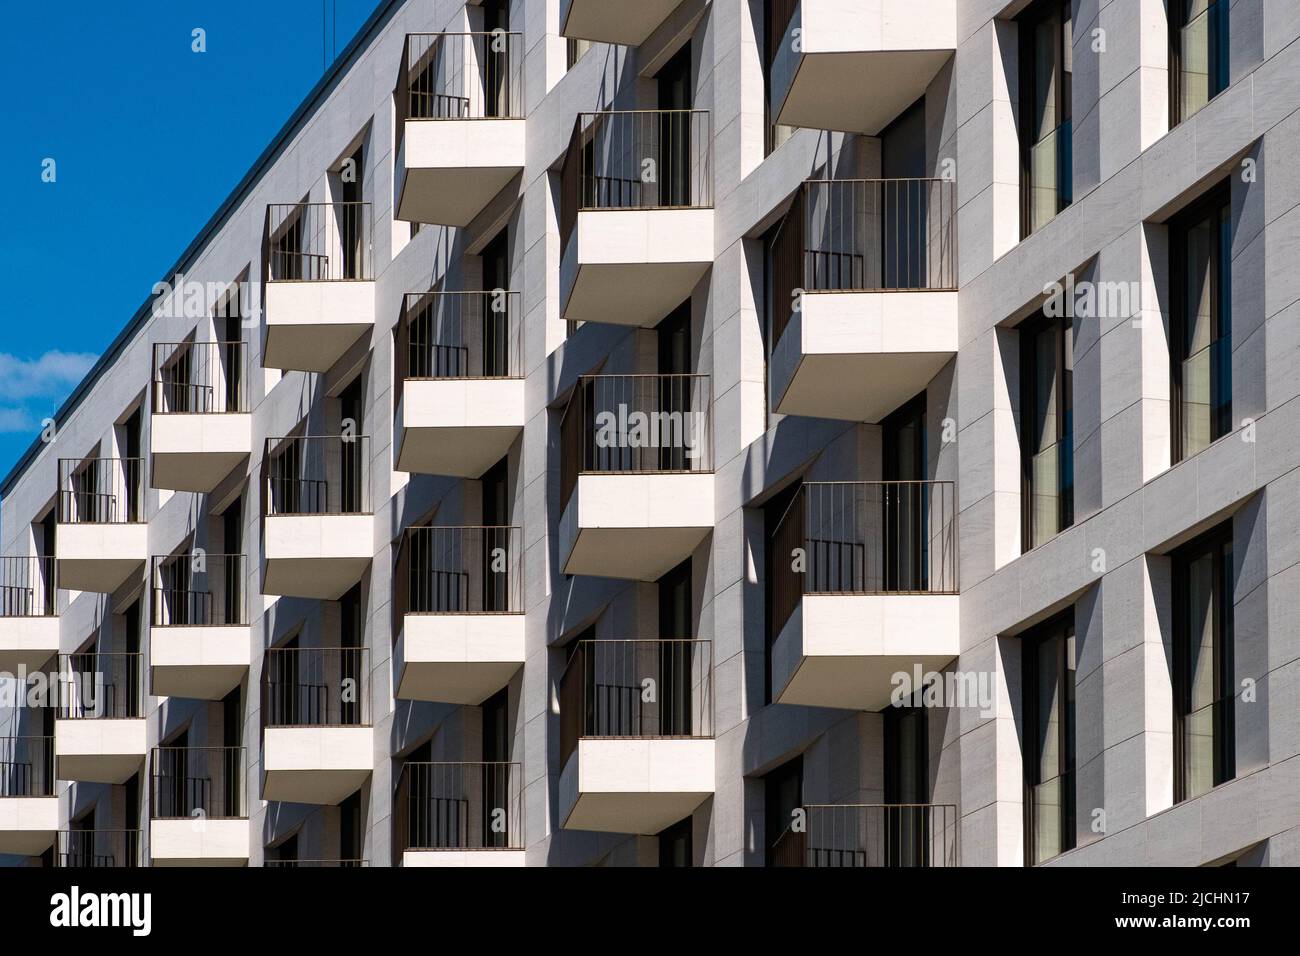 balcones en la fachada del edificio de apartamentos, inmuebles residenciales Foto de stock